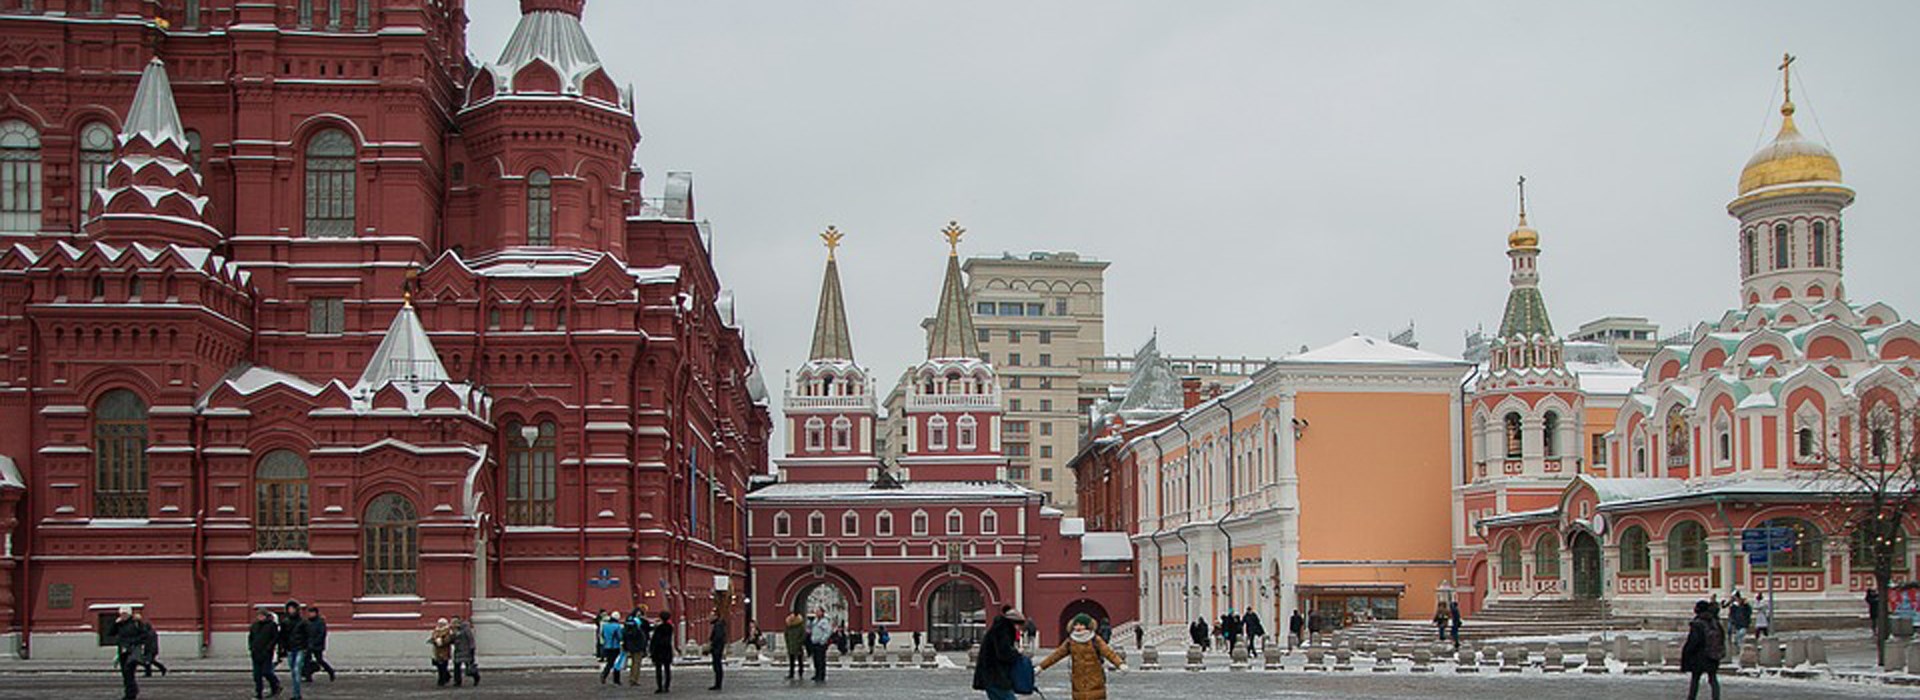 Visiter La Place Rouge - Russie